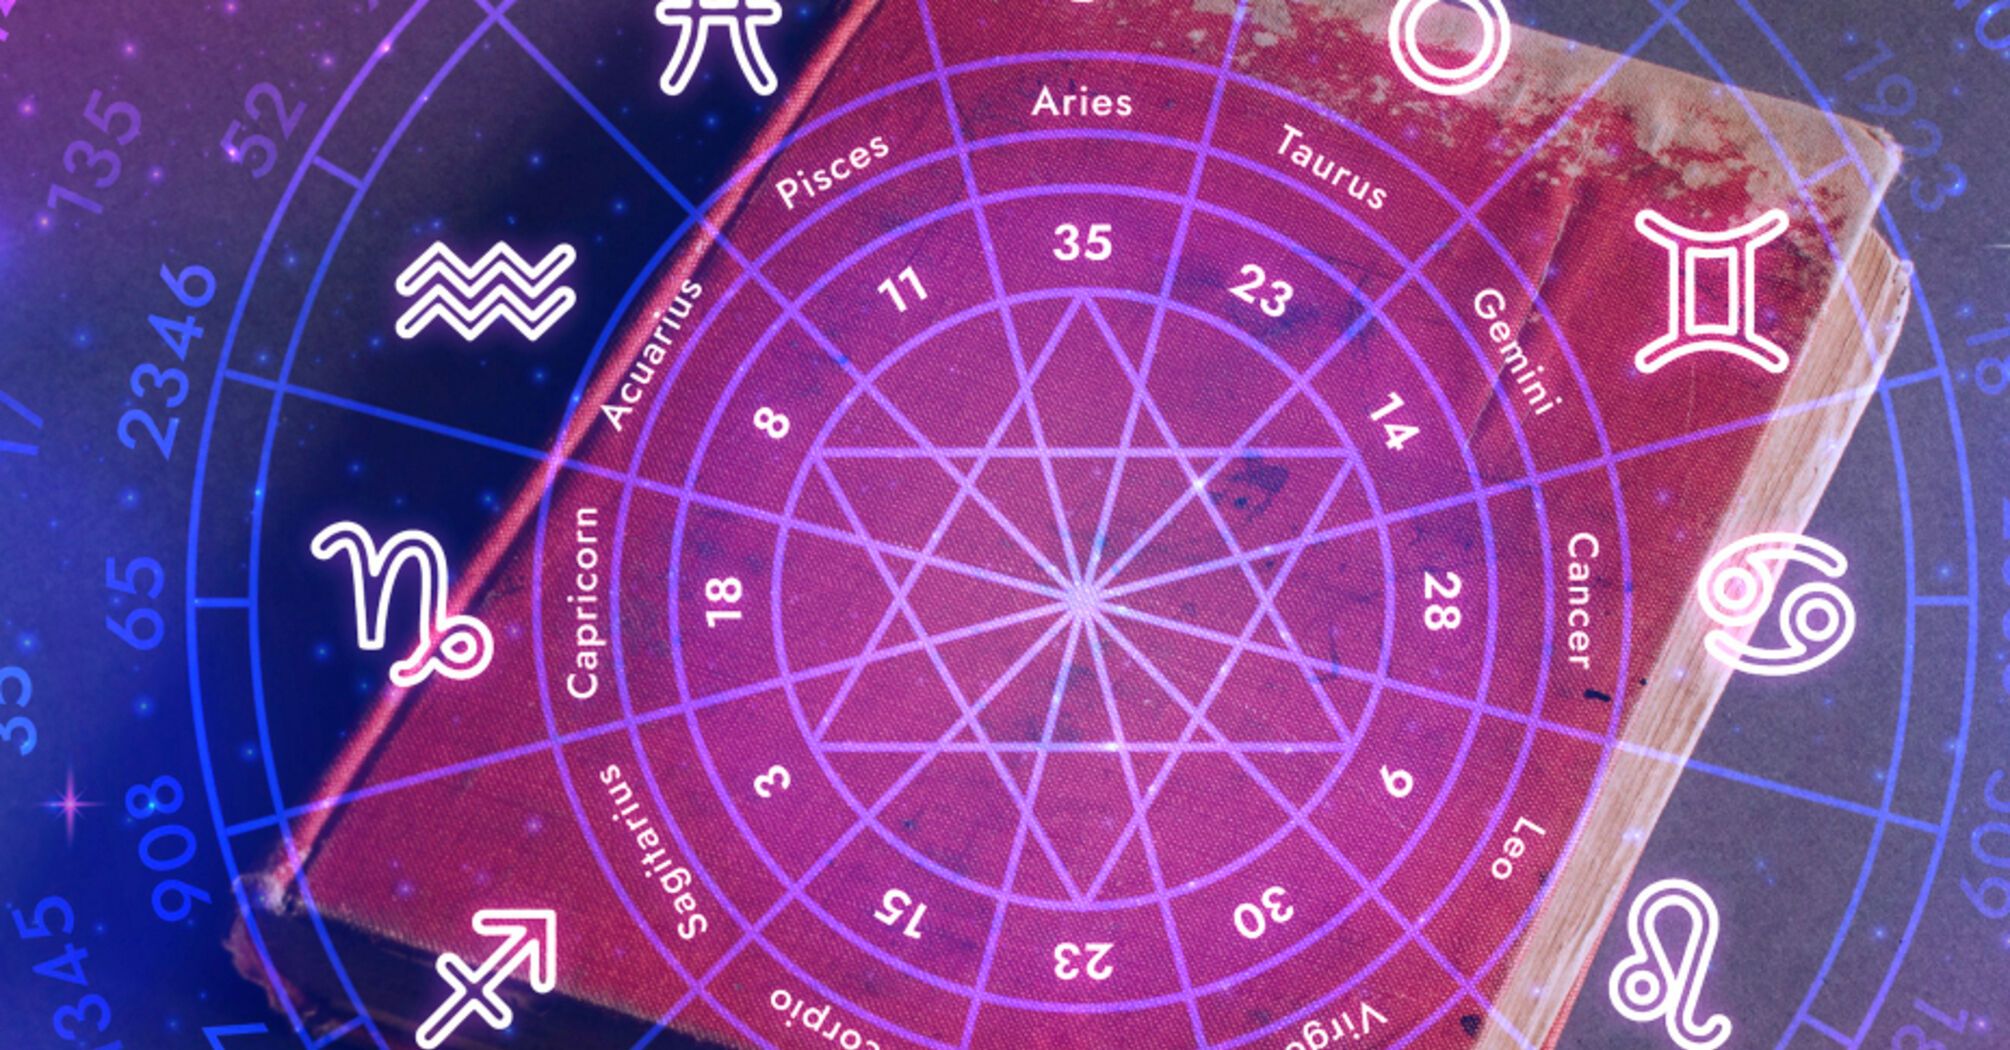 Всех ждет день уникальных возможностей для личного развития: гороскоп для всех знаков зодиака на 13 апреля